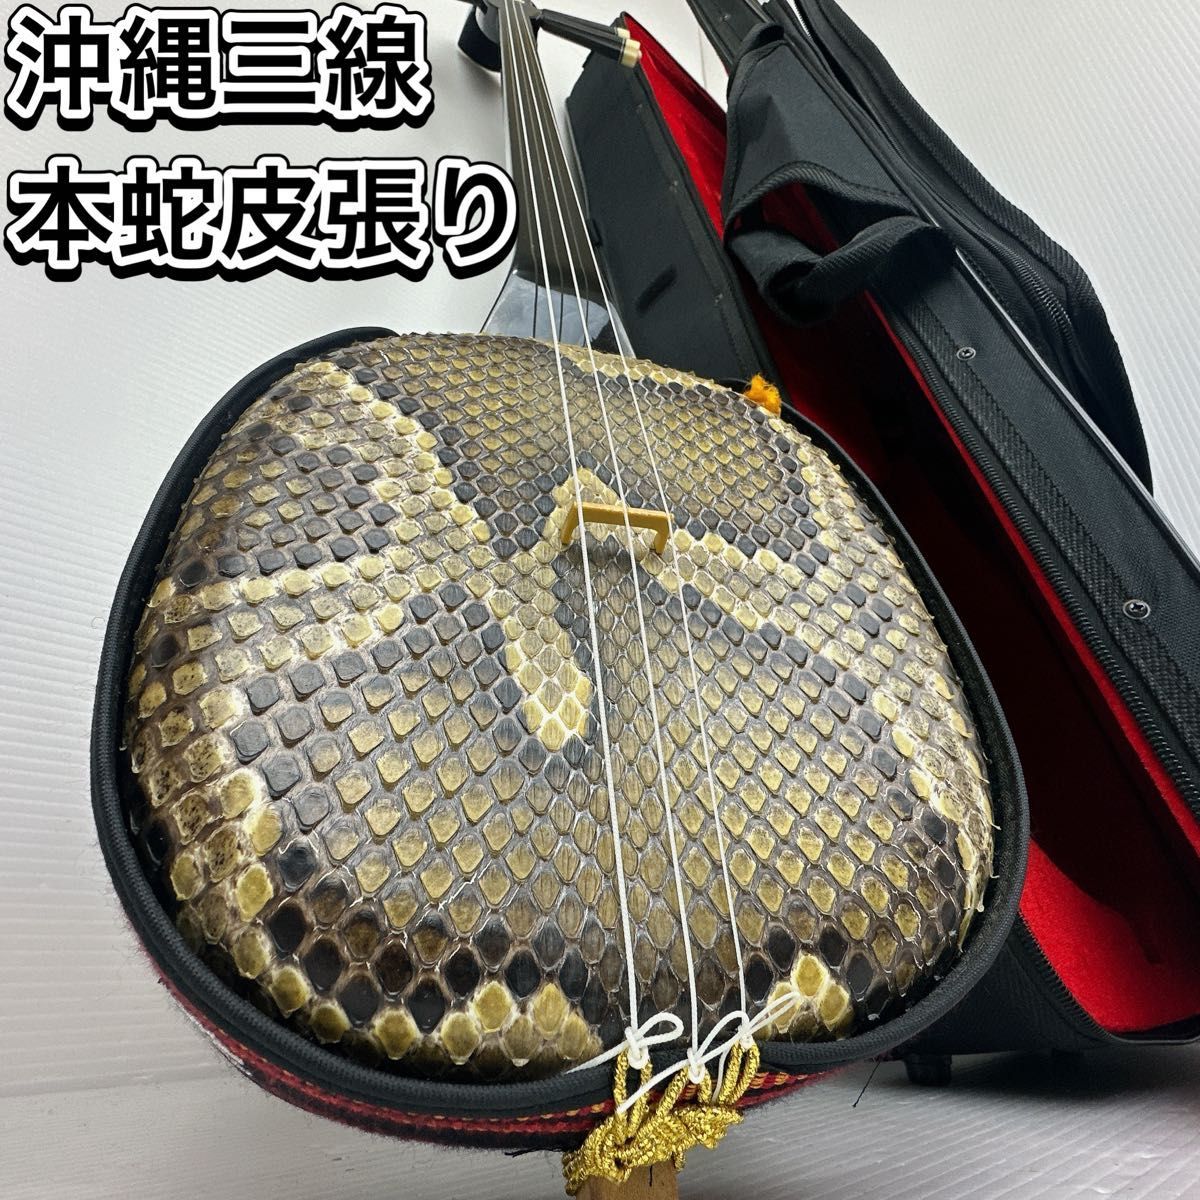 美品沖縄三線本蛇皮一枚張り琉球三味線ケースウマ入門書和楽器弦楽器